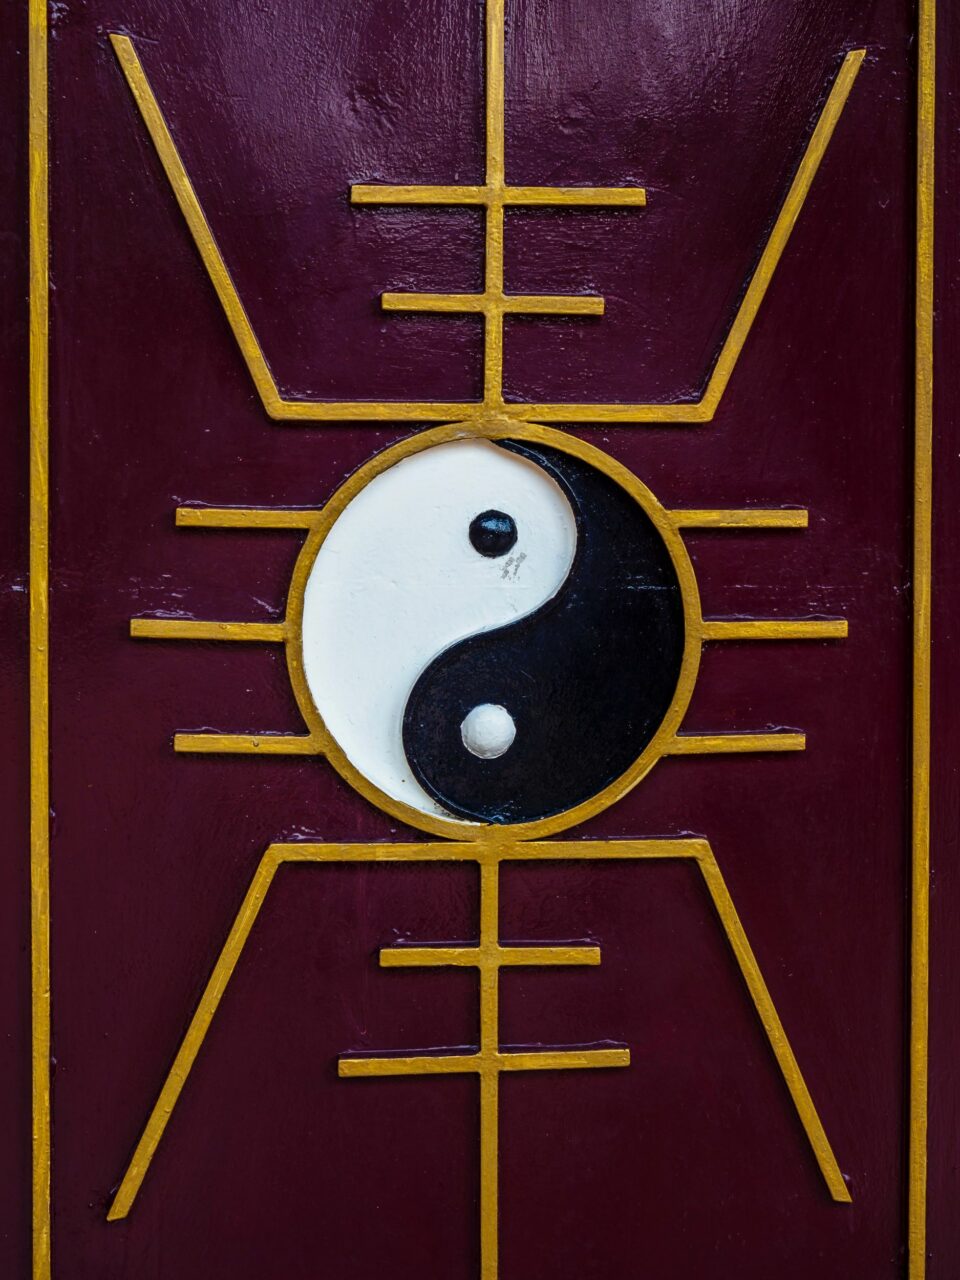 Yin und Yang Zeichen